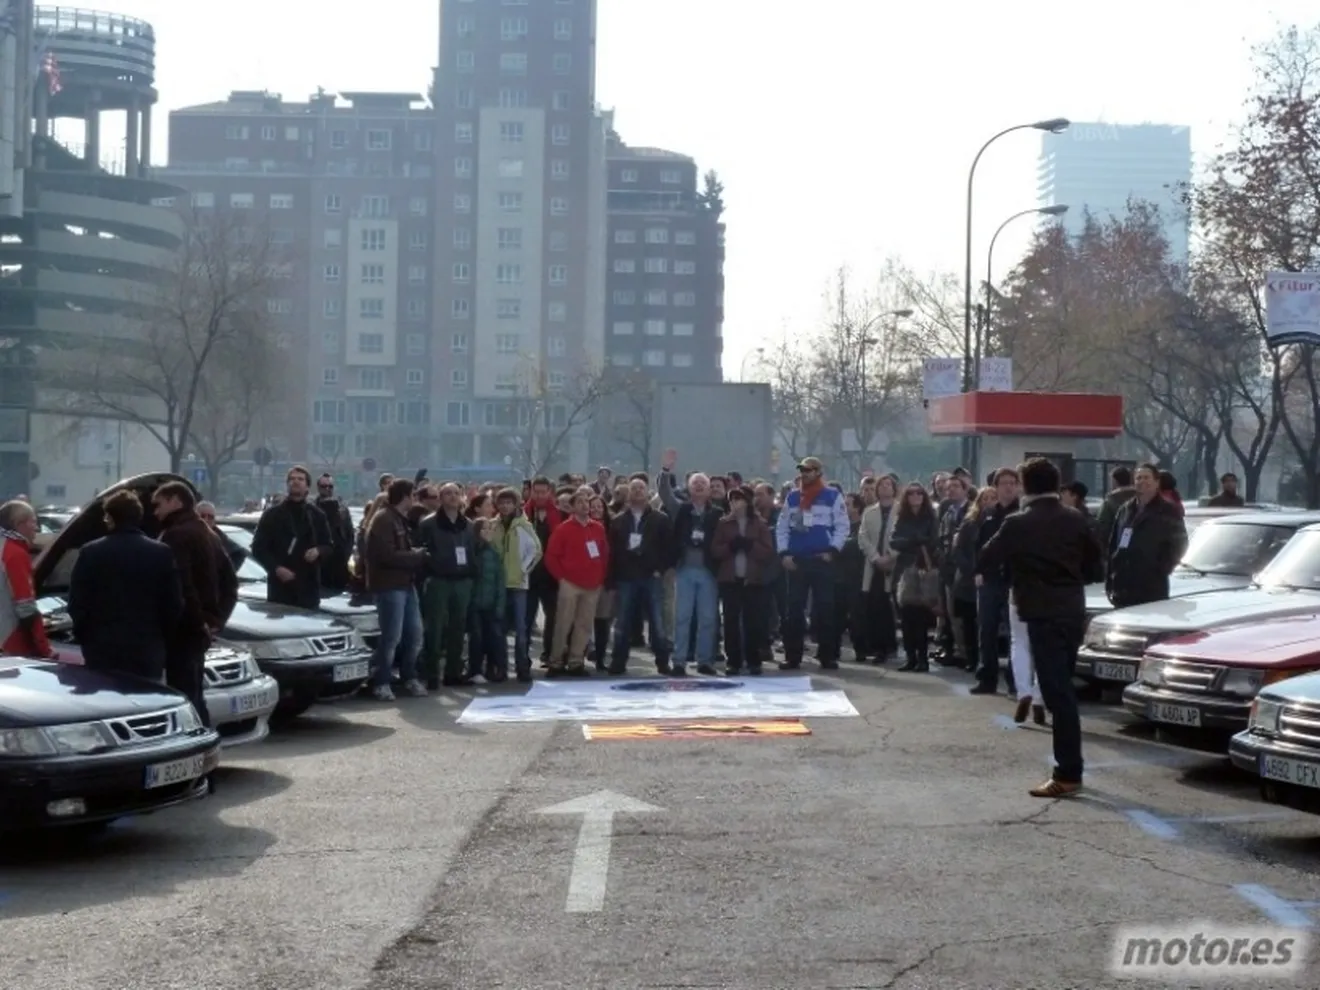 Concentración de apoyo a Saab en Madrid: “We are many, we are Saab”